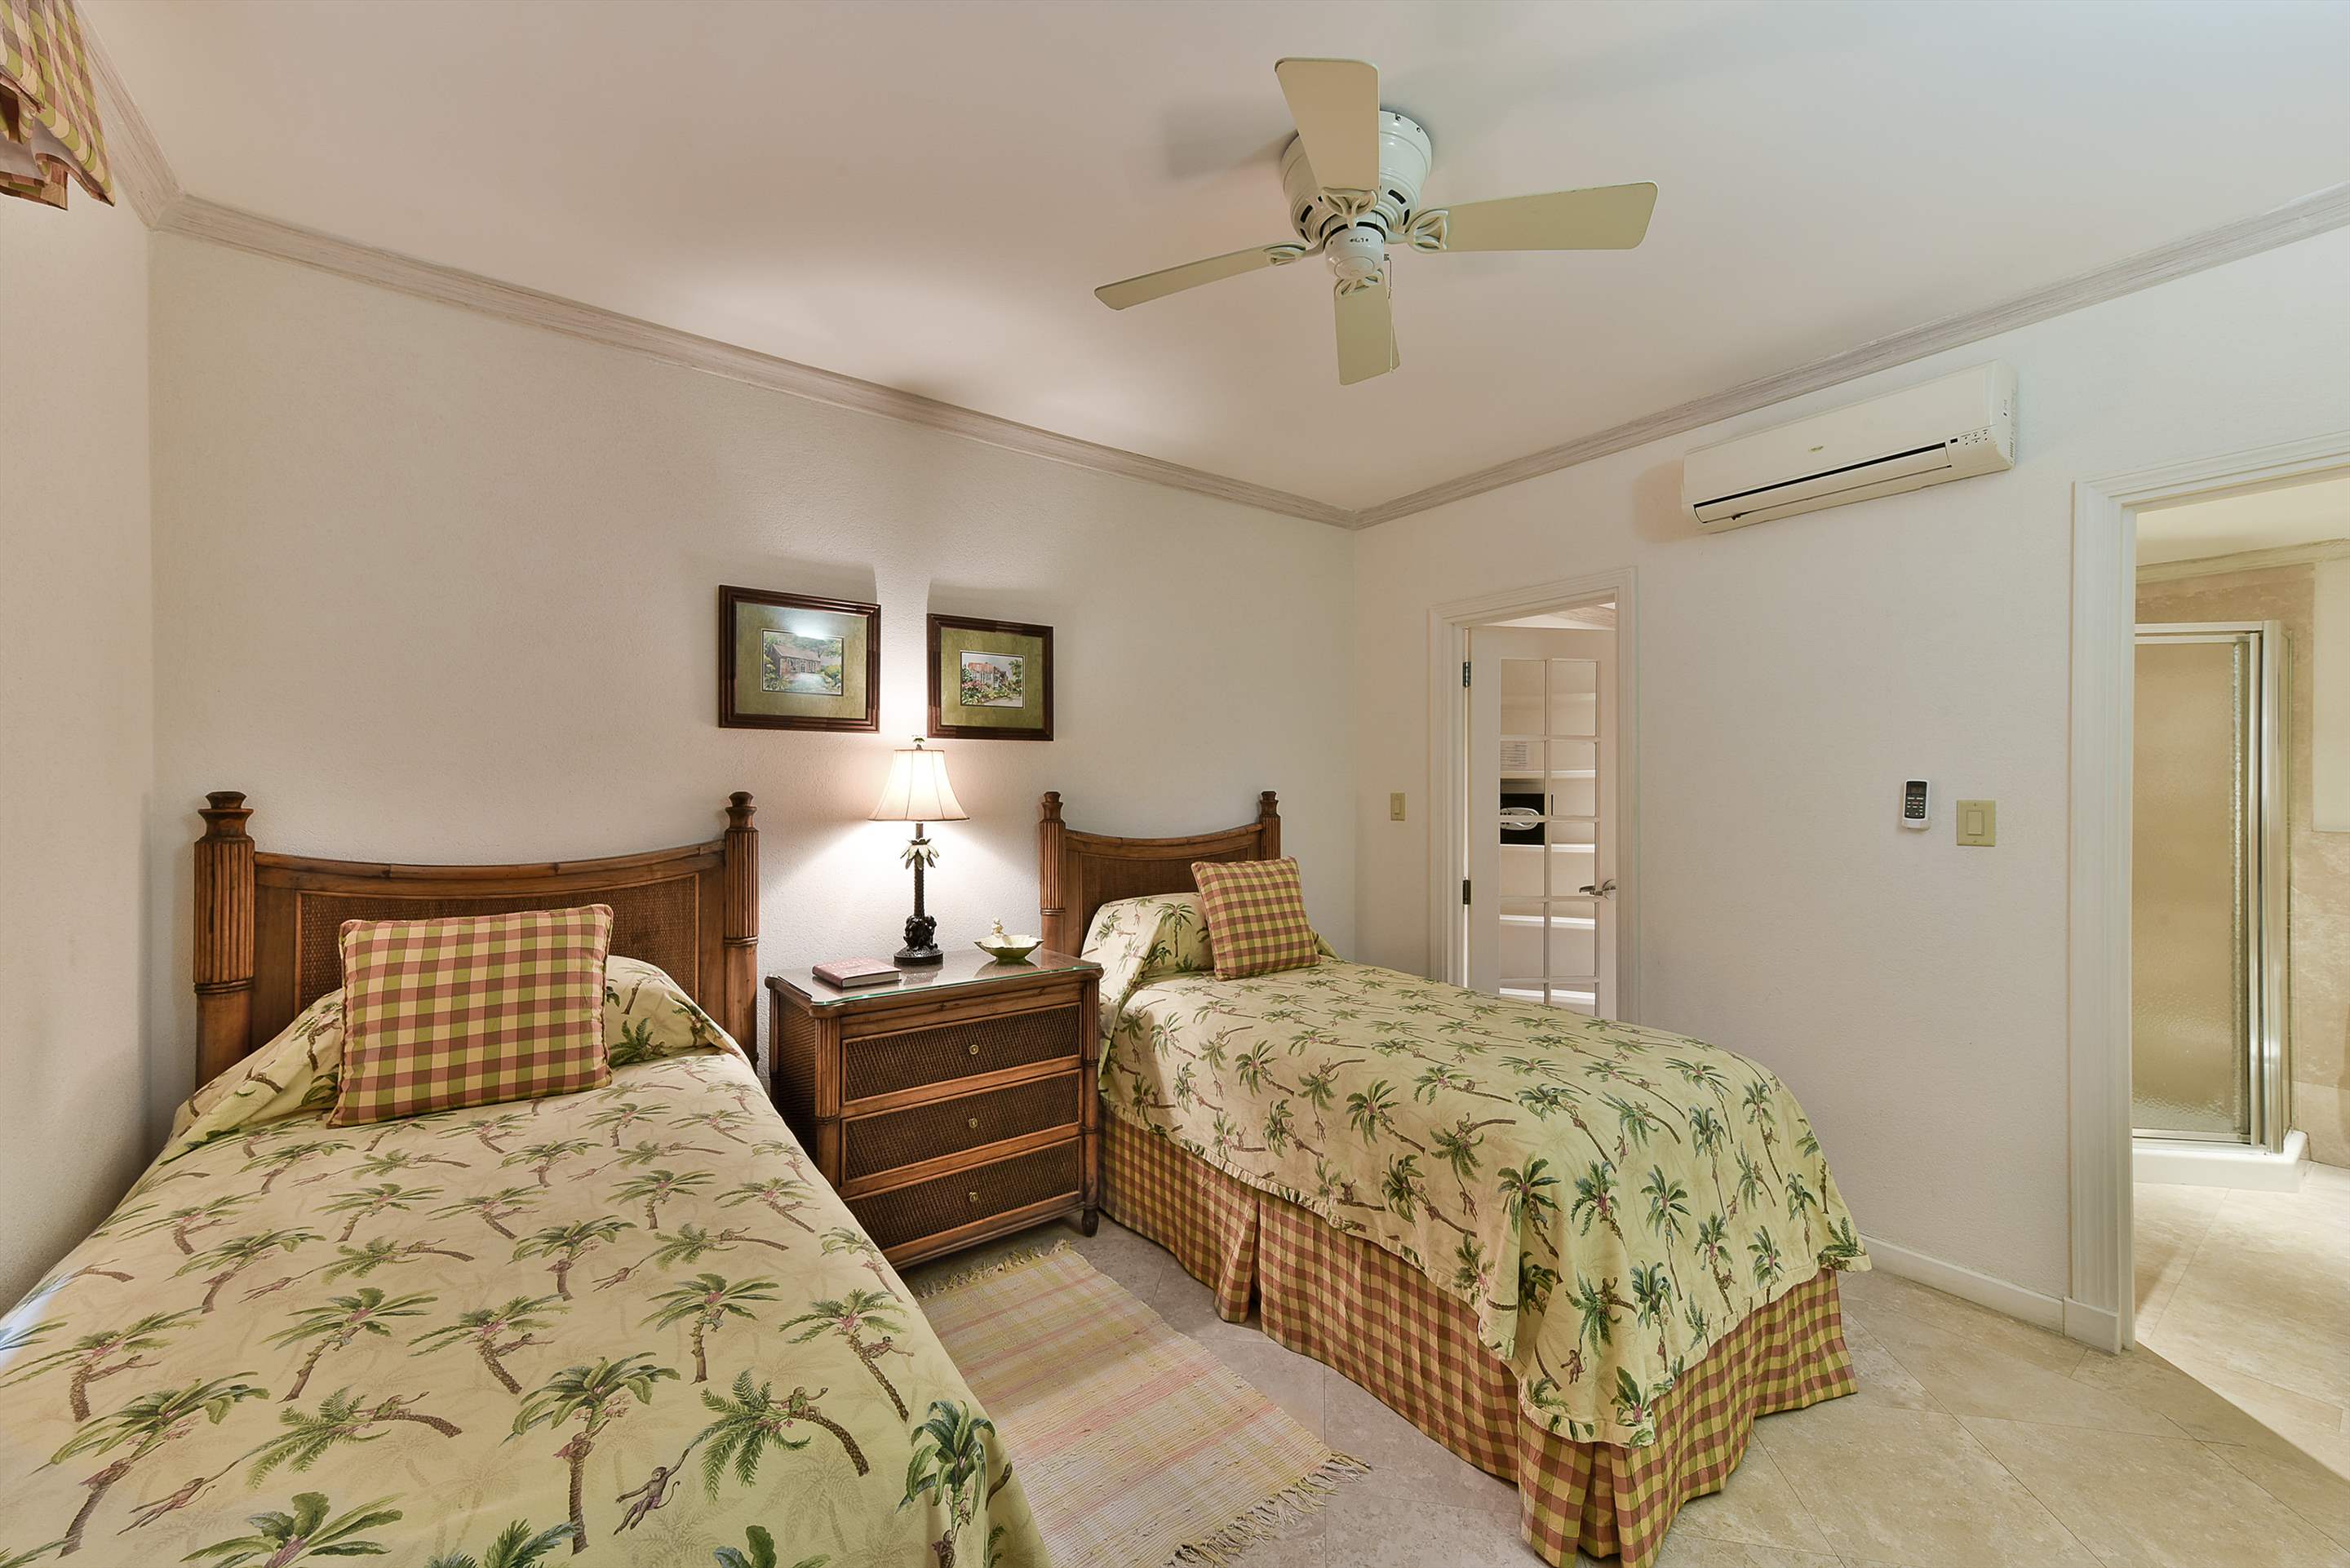 Maxwell Beach Villas 302, 2 bedroom, 2 bedroom apartment in St. Lawrence Gap & South Coast, Barbados Photo #17